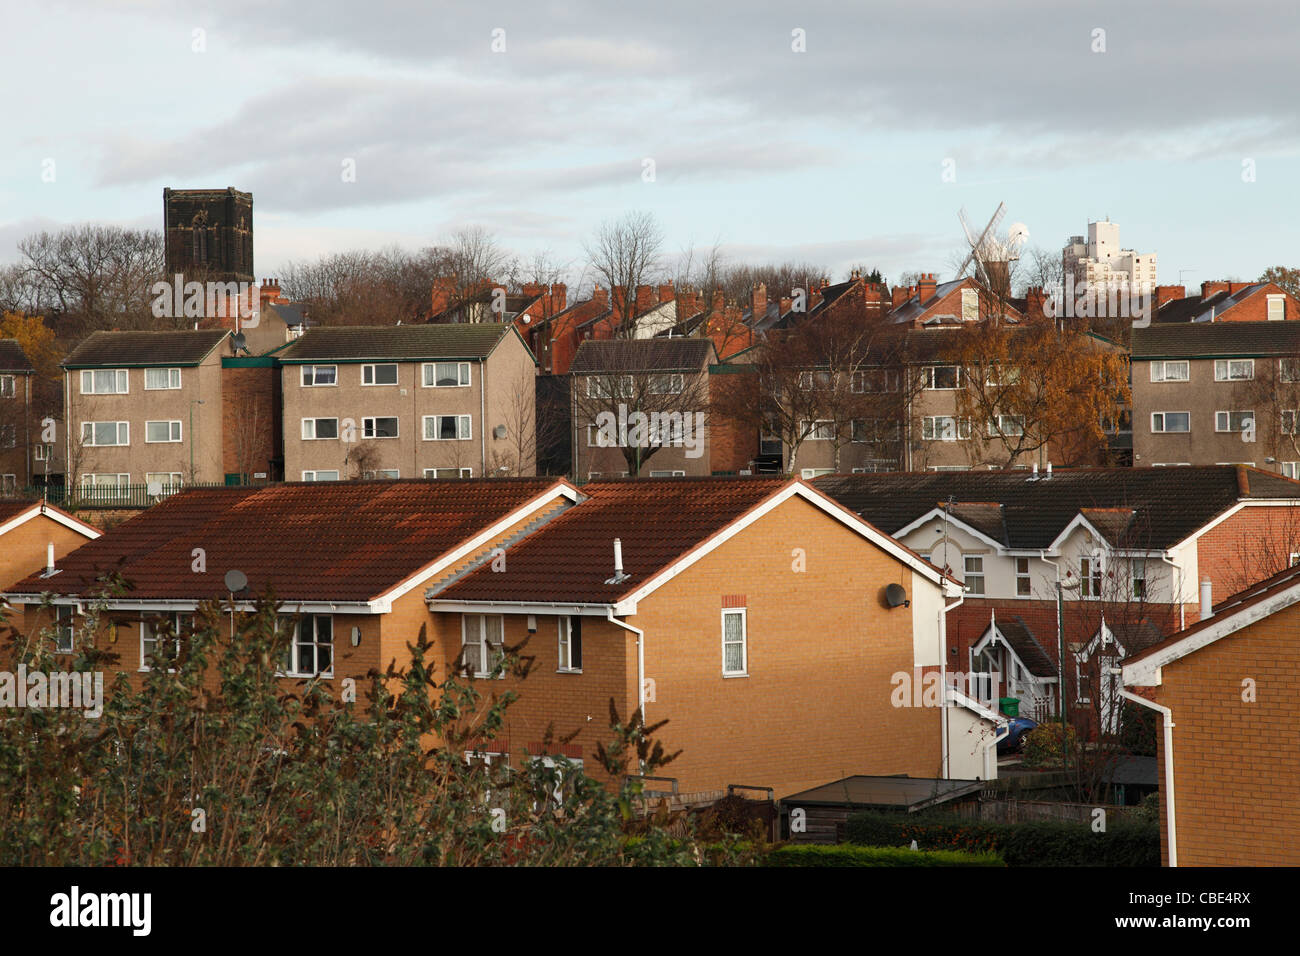 Des logements sociaux et privés à Sneinton, Nottingham, Angleterre, Royaume-Uni Banque D'Images